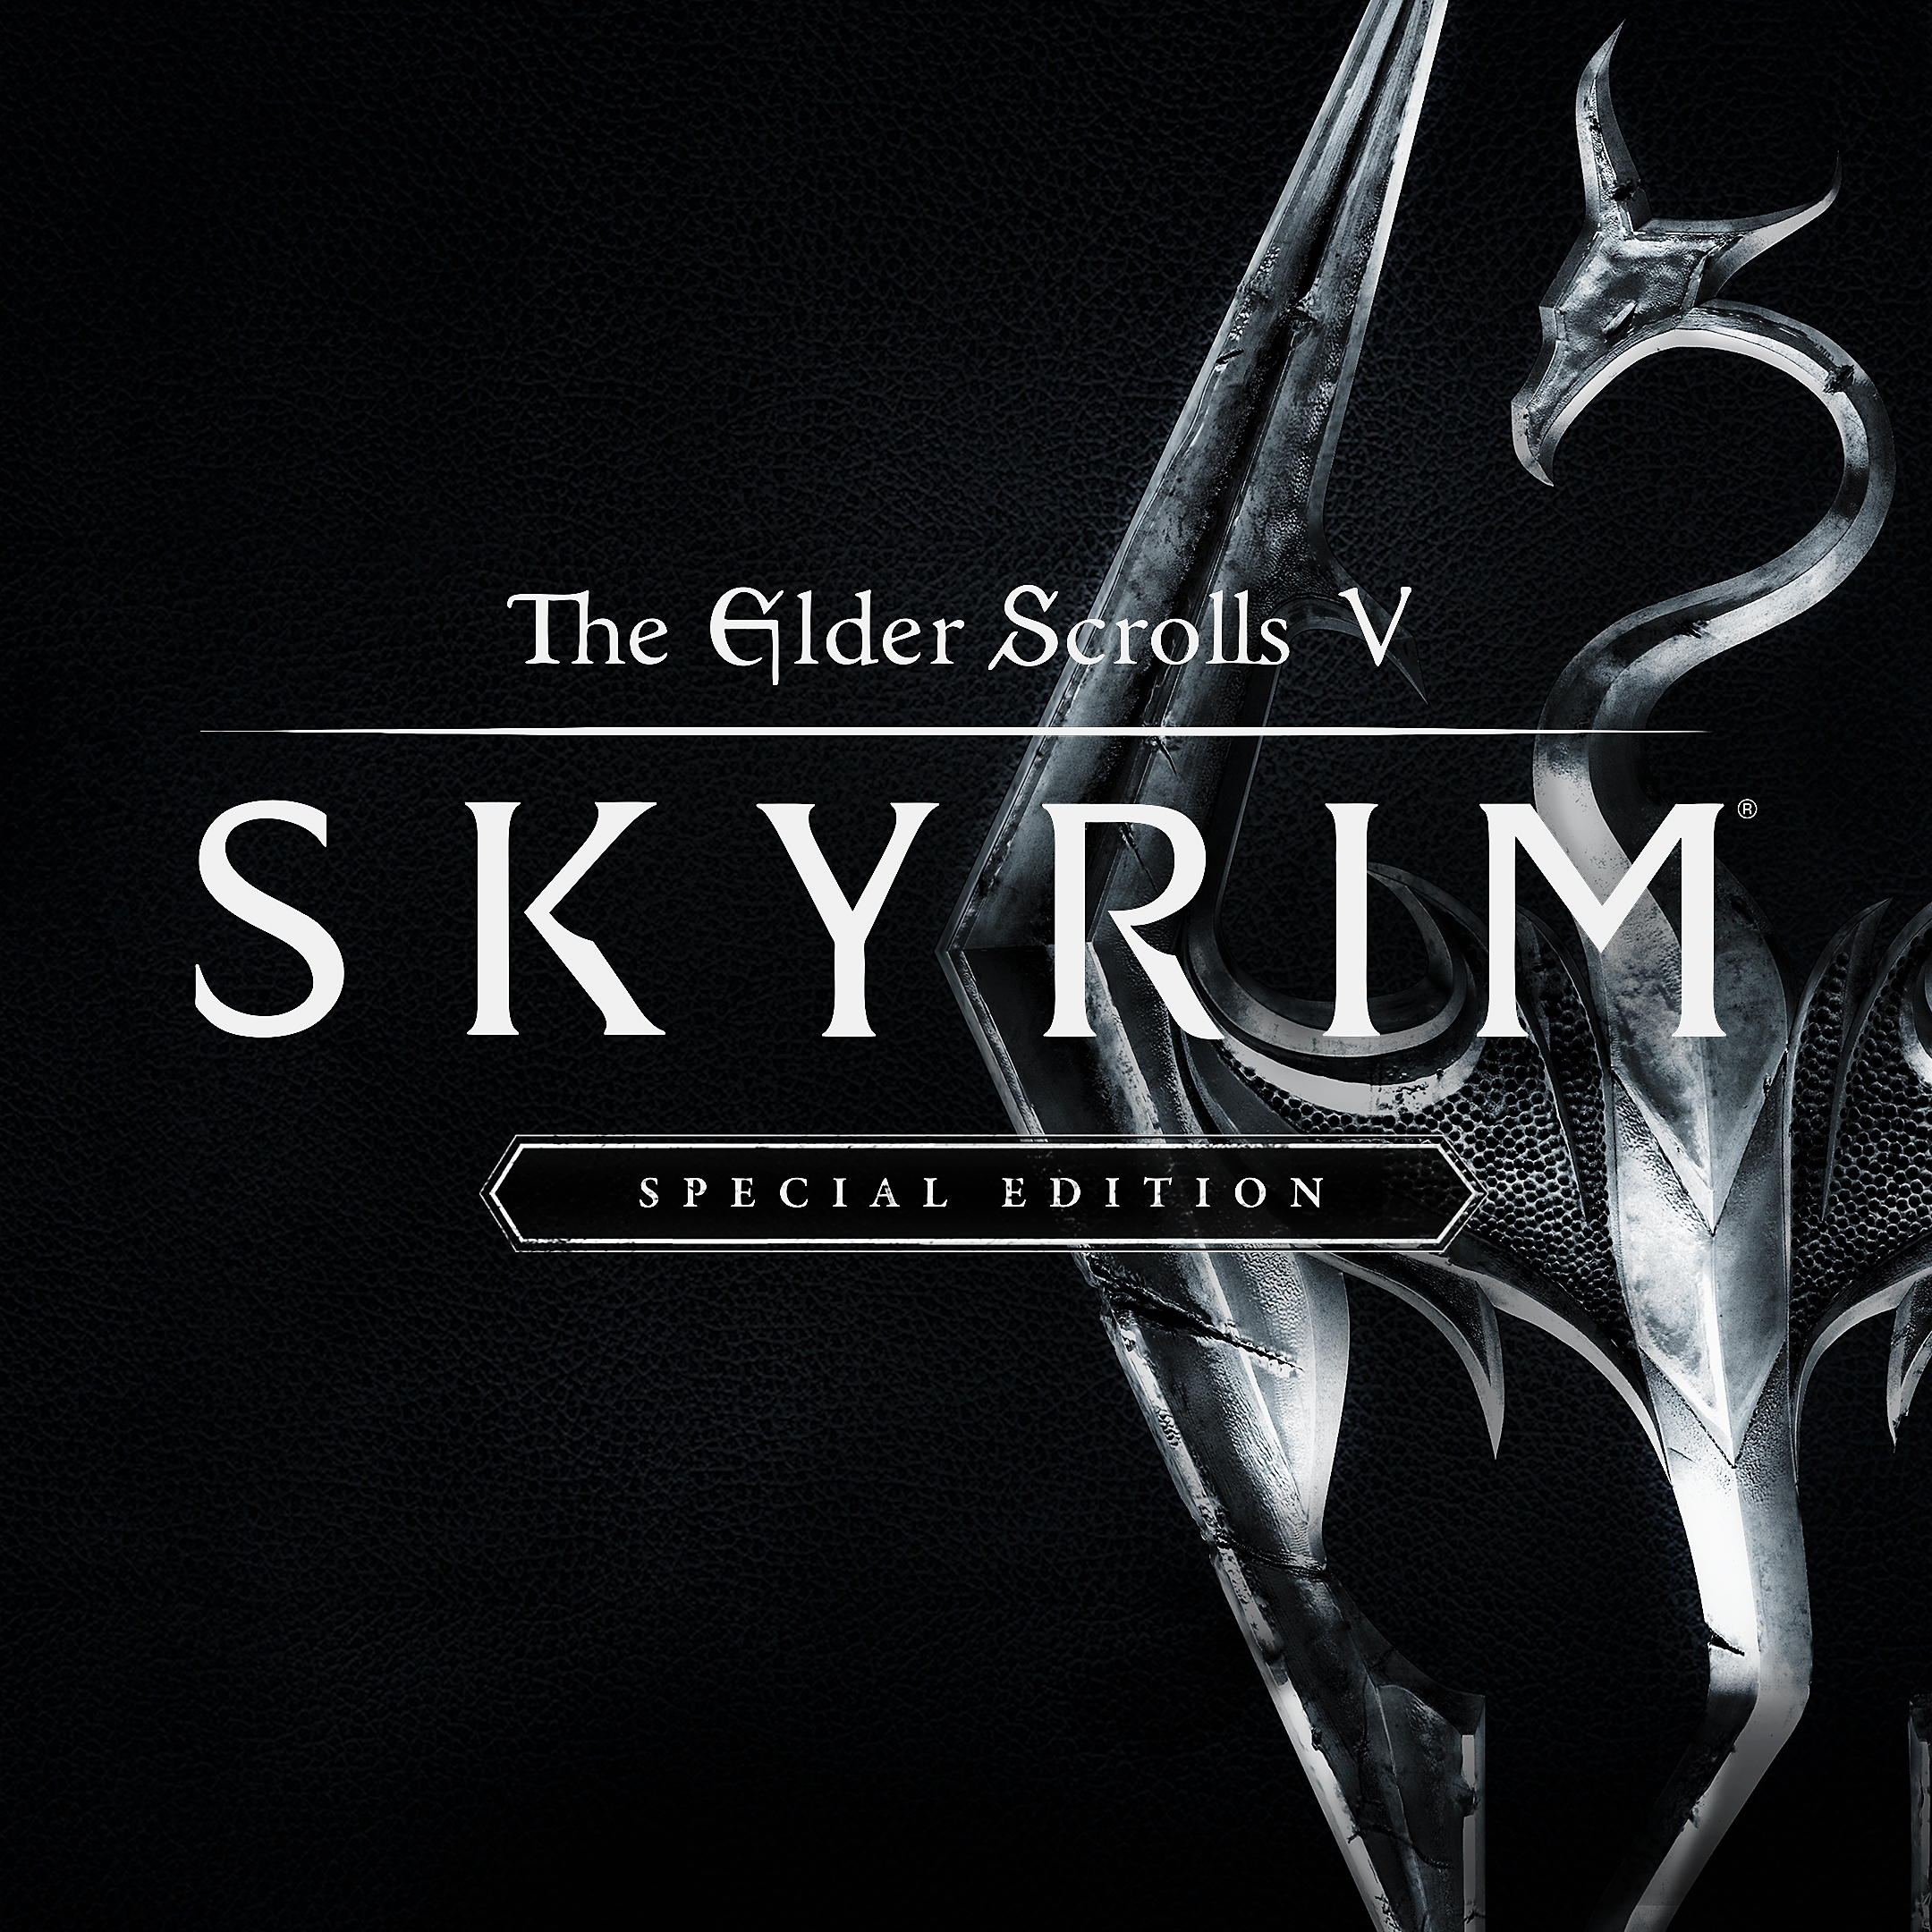 The Elder Scrolls V: Skyrim Special Edition – packshot